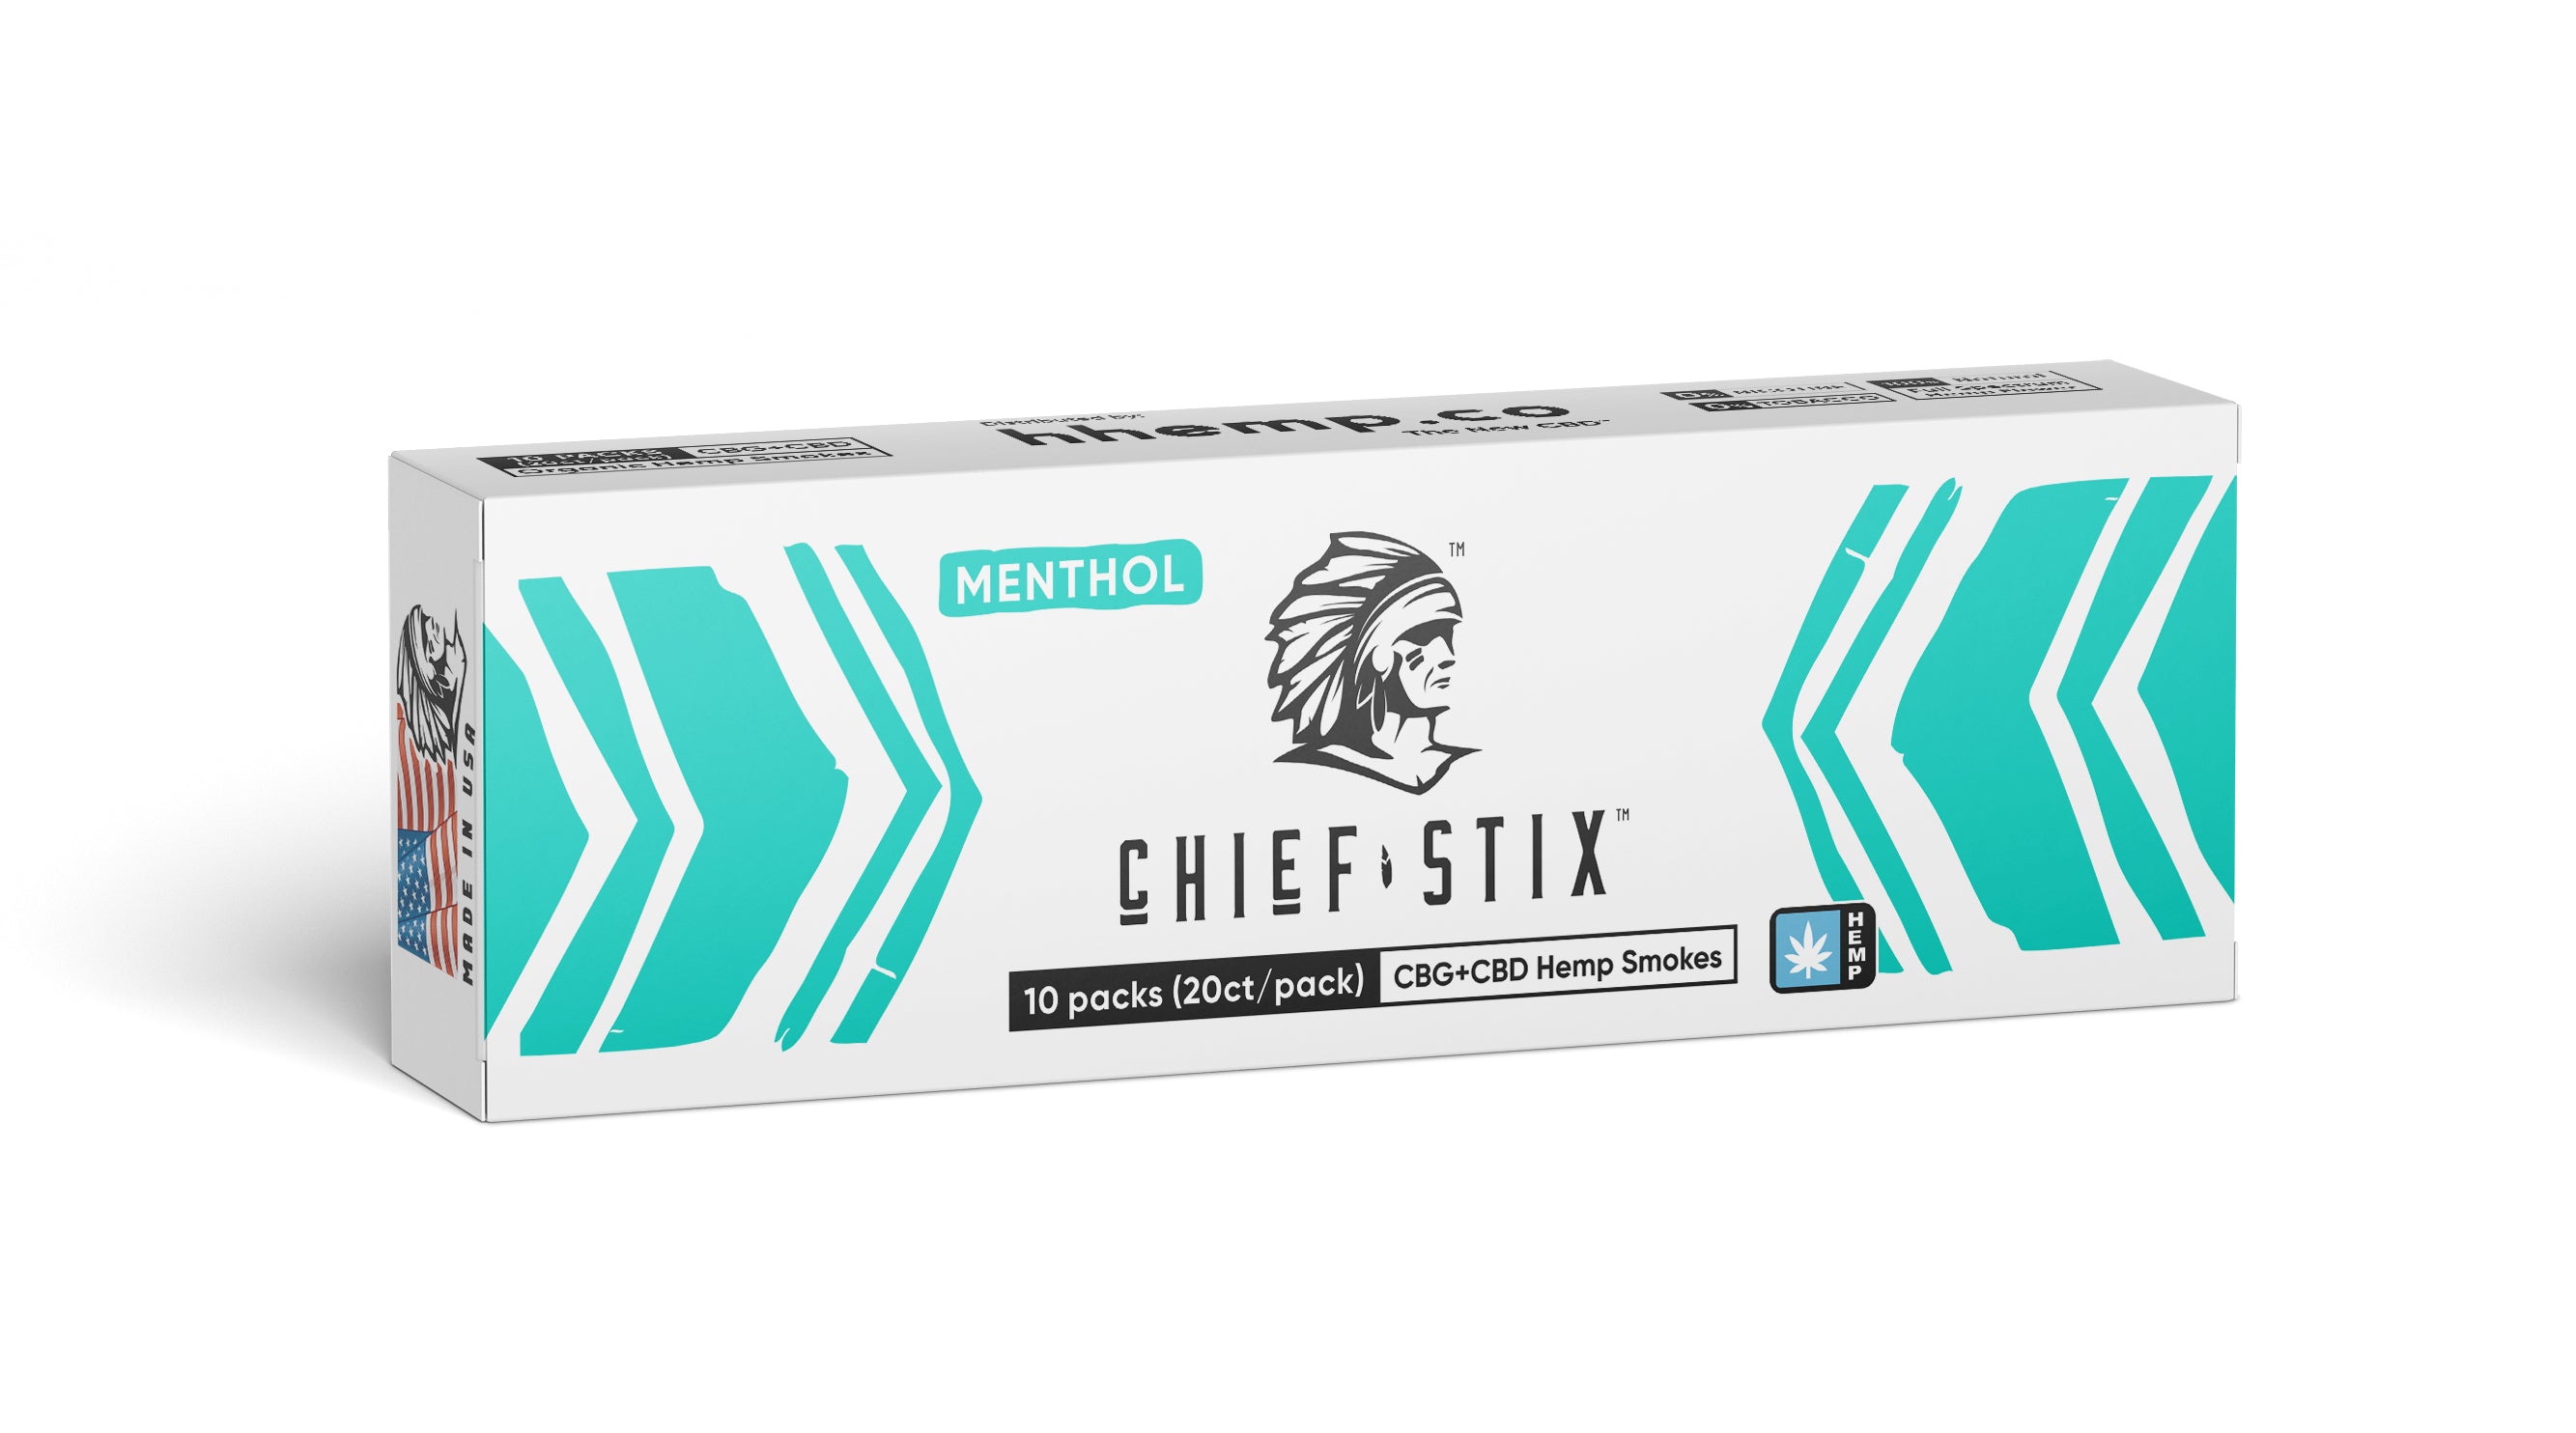 Chief Stix CBG+CBD Hemp Smokes Menthol (10ct) - Carton